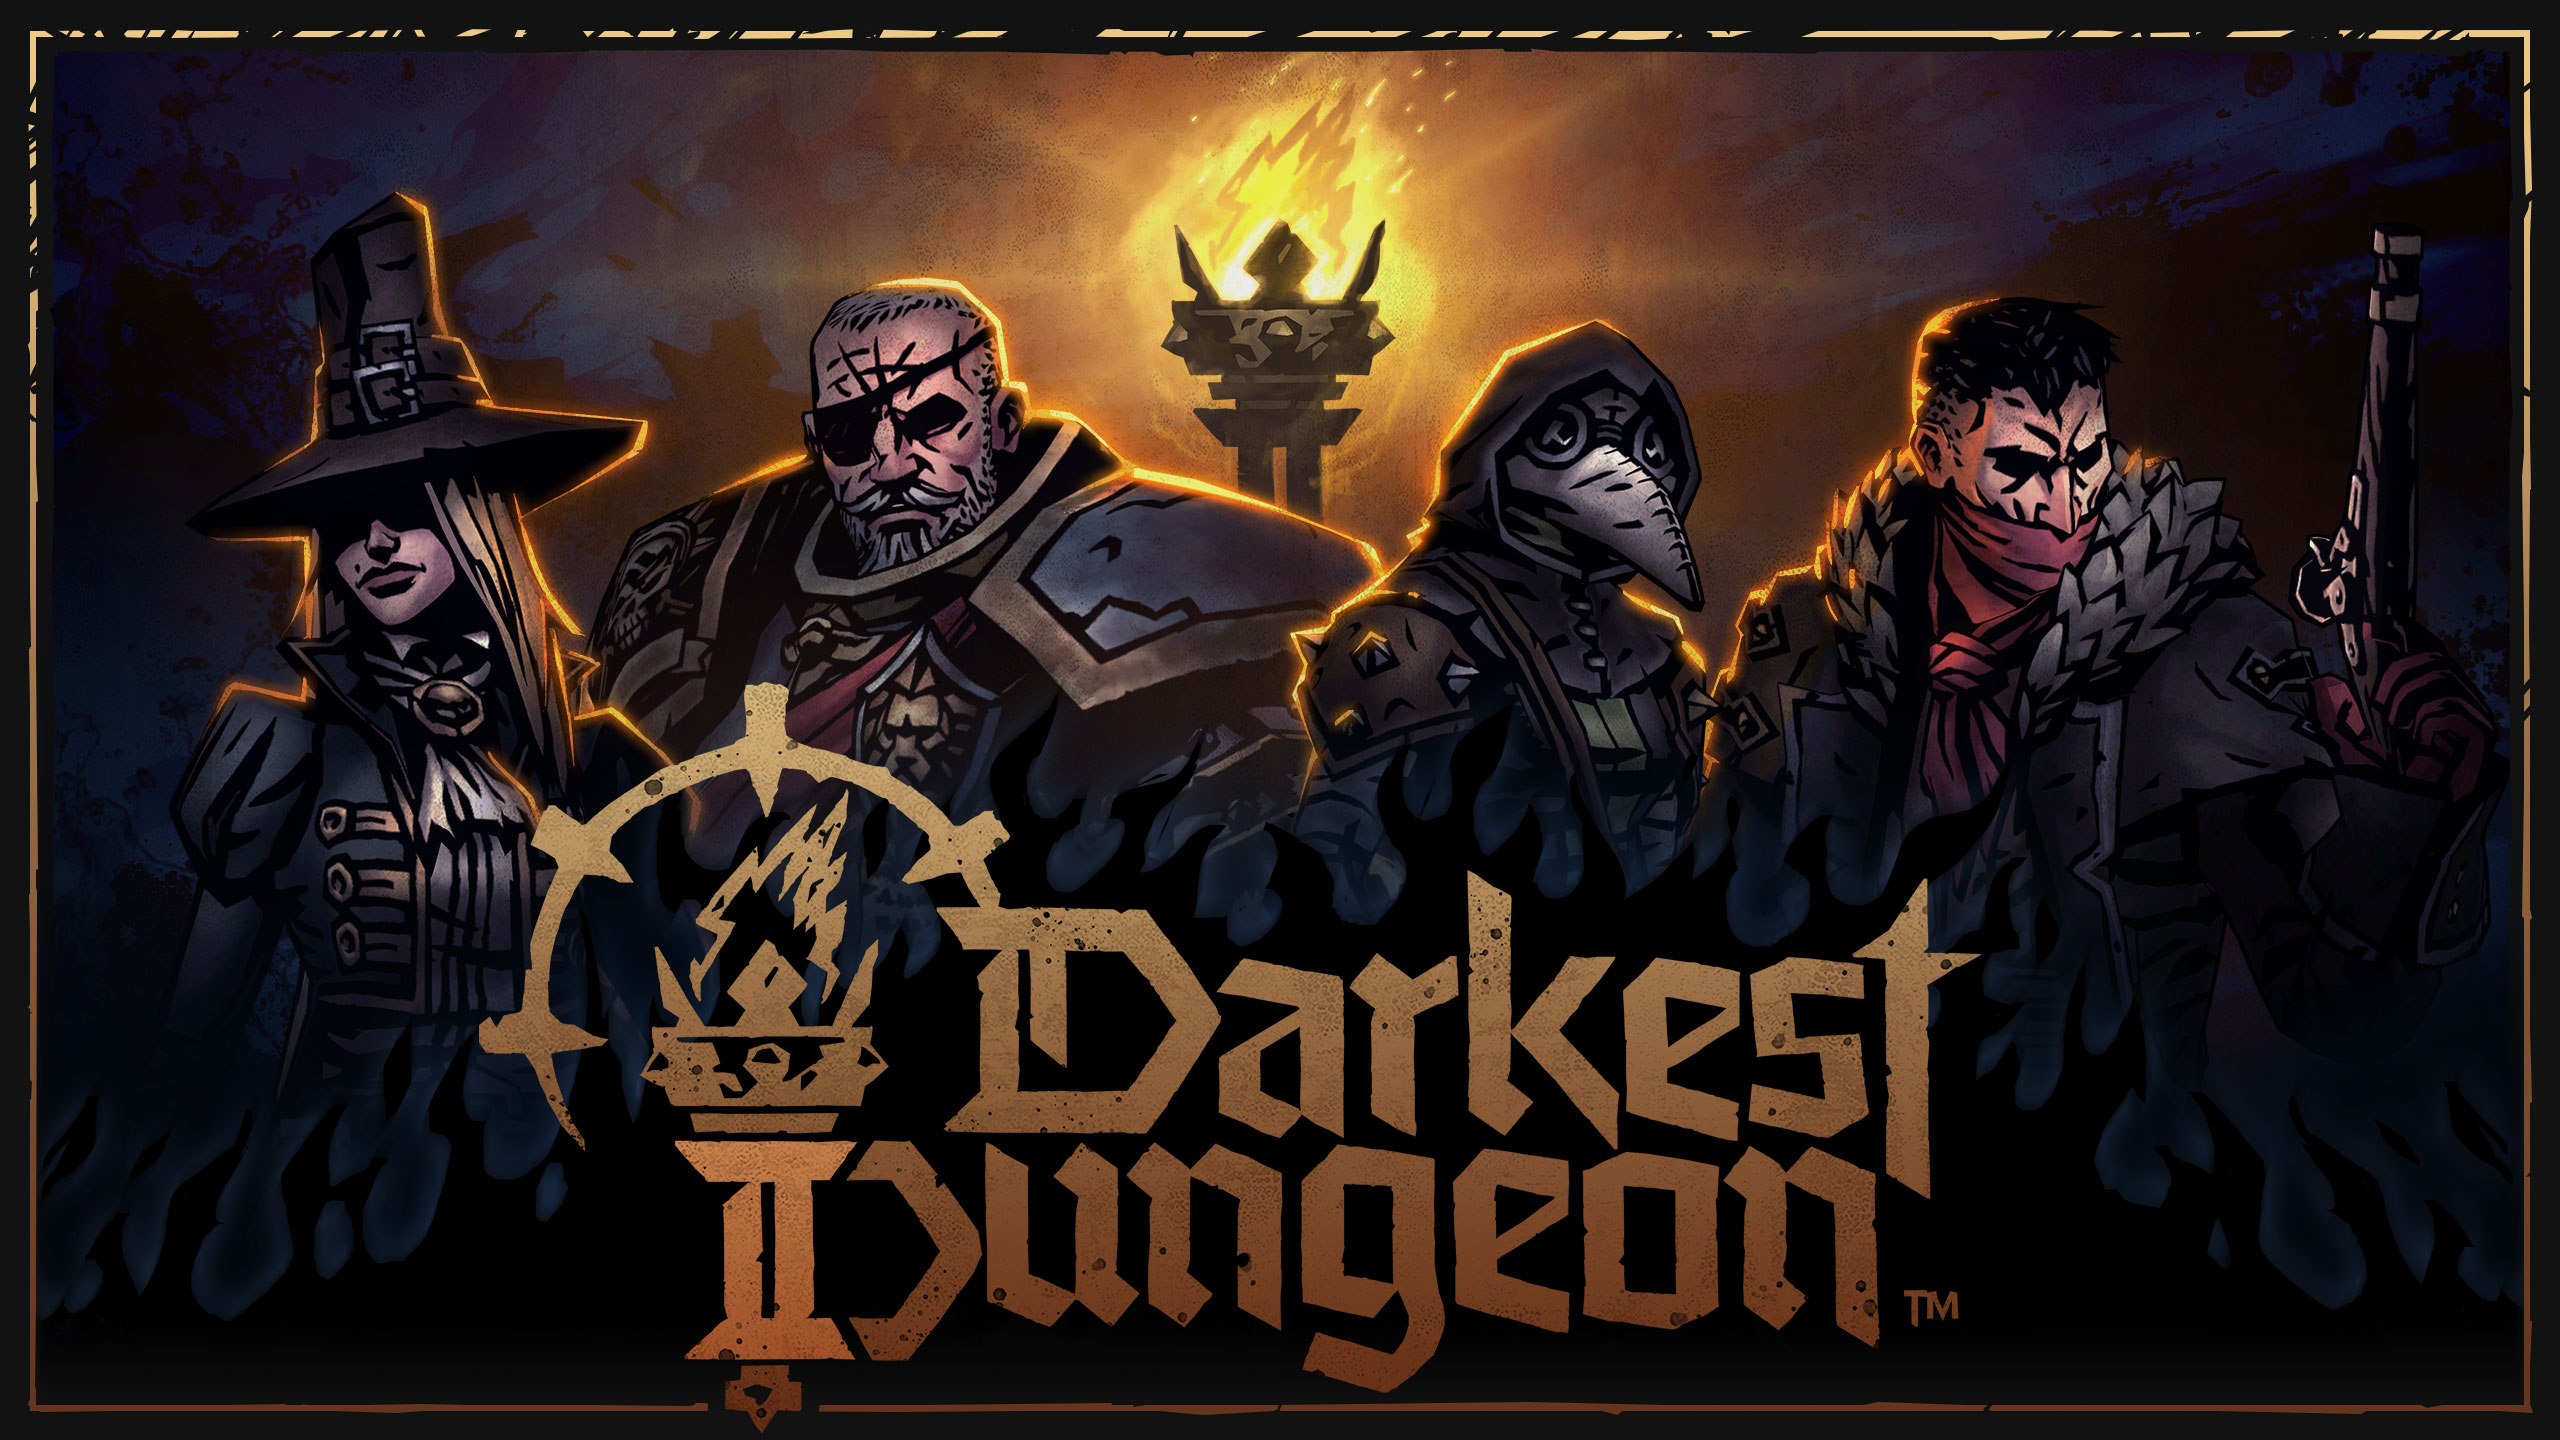 Darkest Dungeon 2 na Xbox, PlayStation i Switch może zostać wydany wkrótce